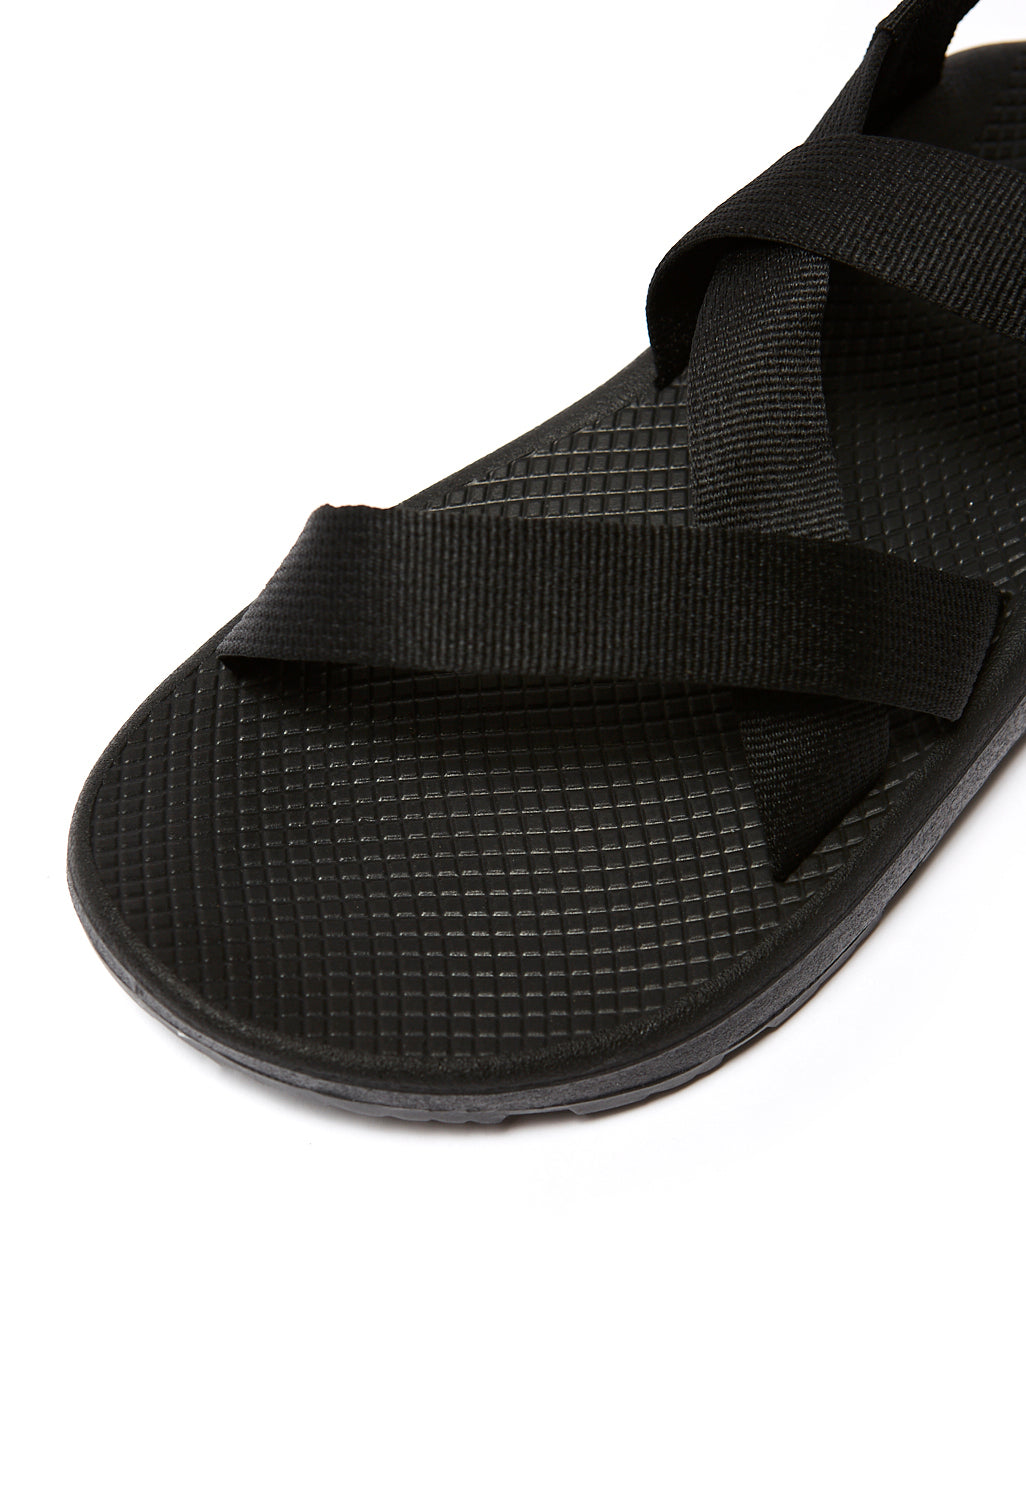 Chaco Men's Z Cloud Sandals - Black